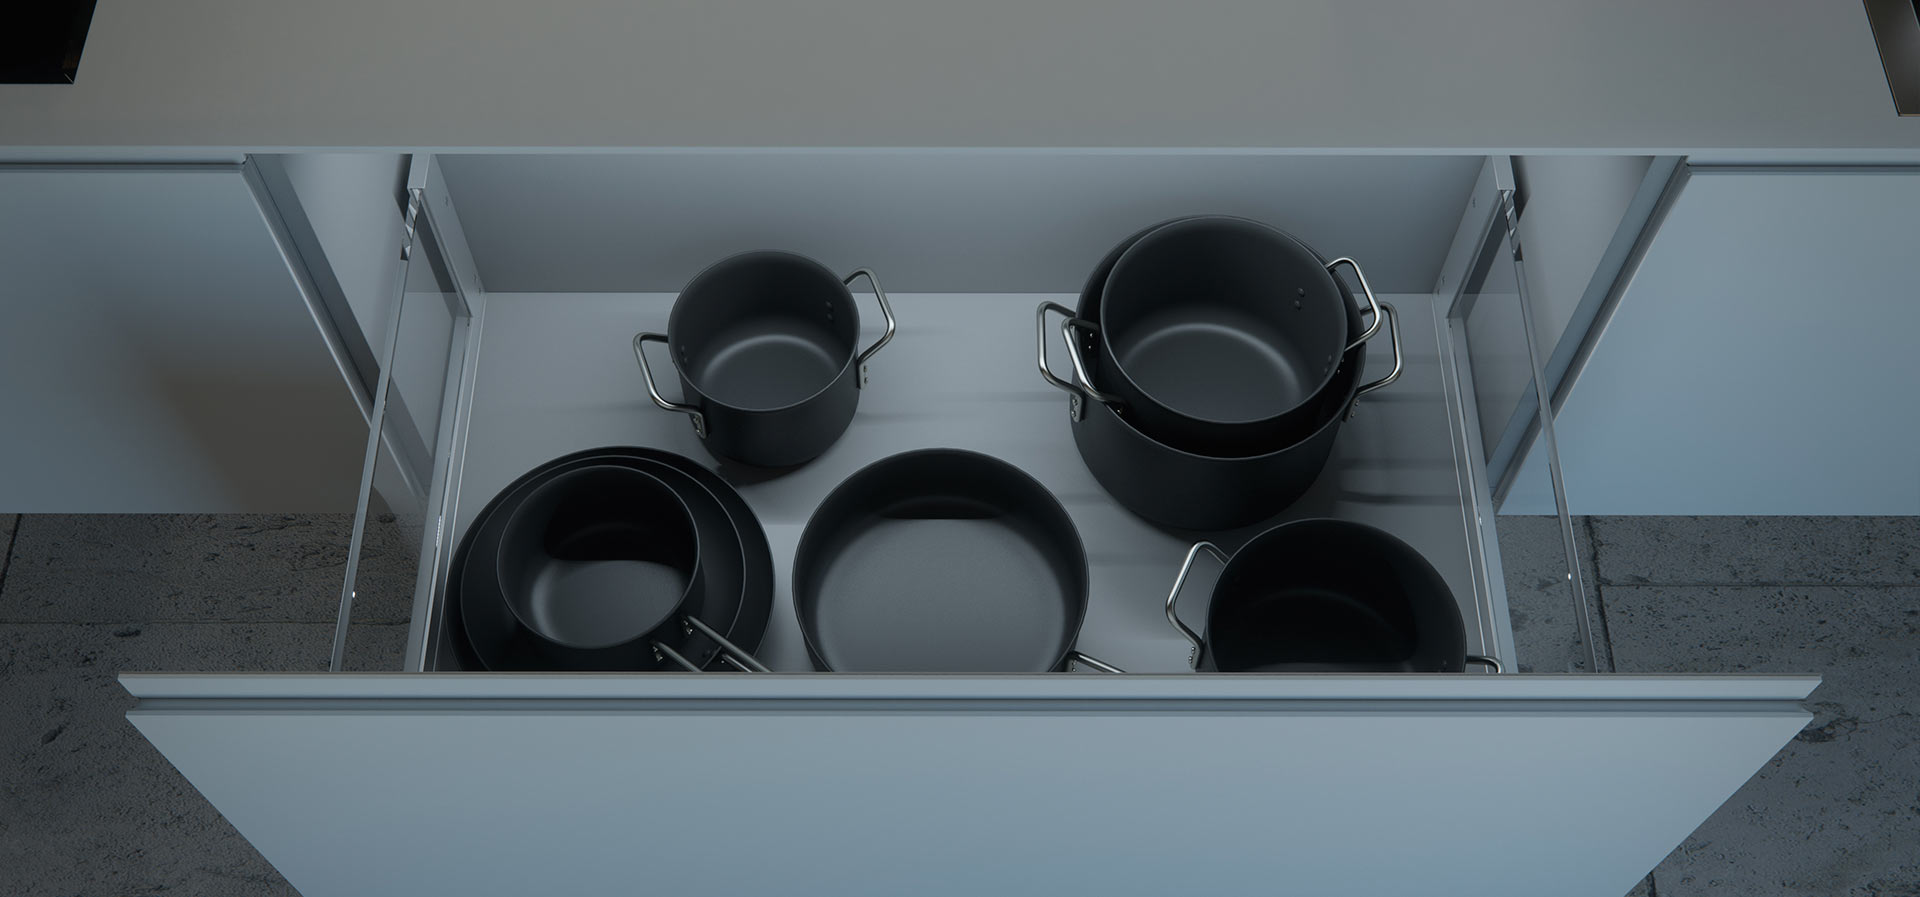 Mueble de diseño para cocina en color blanco abierto con un conjunto de recipientes de color negro en su interior